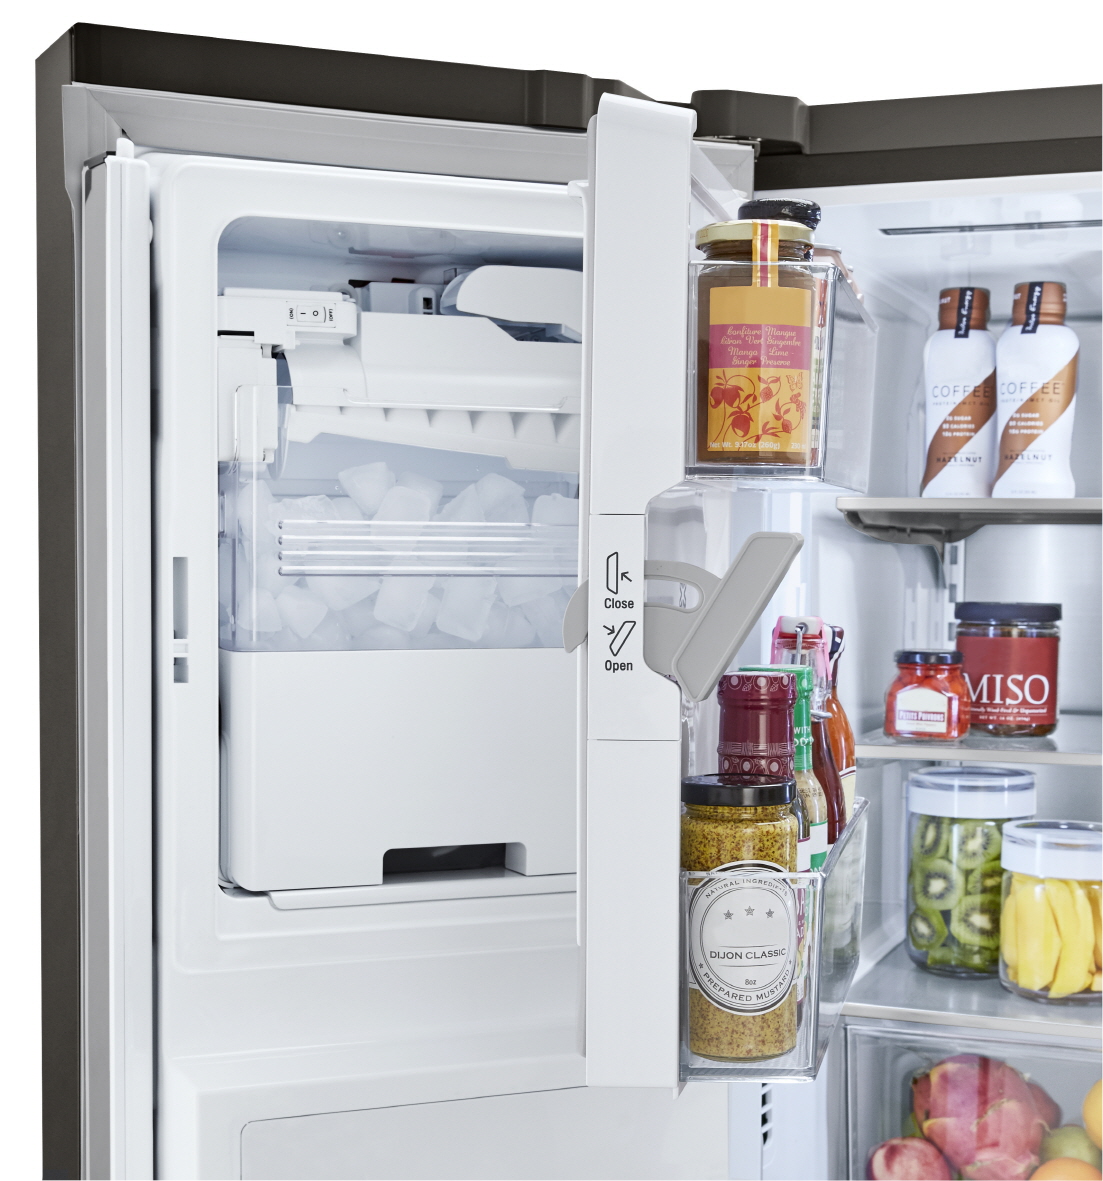  냉장고 안쪽의 공간 활용성을 높여주는 독보적인 도어 제빙 기술로 LG전자 얼음정수기냉장고는 미국 시장에서 최고 프리미엄 제품으로 인정받고 있다.